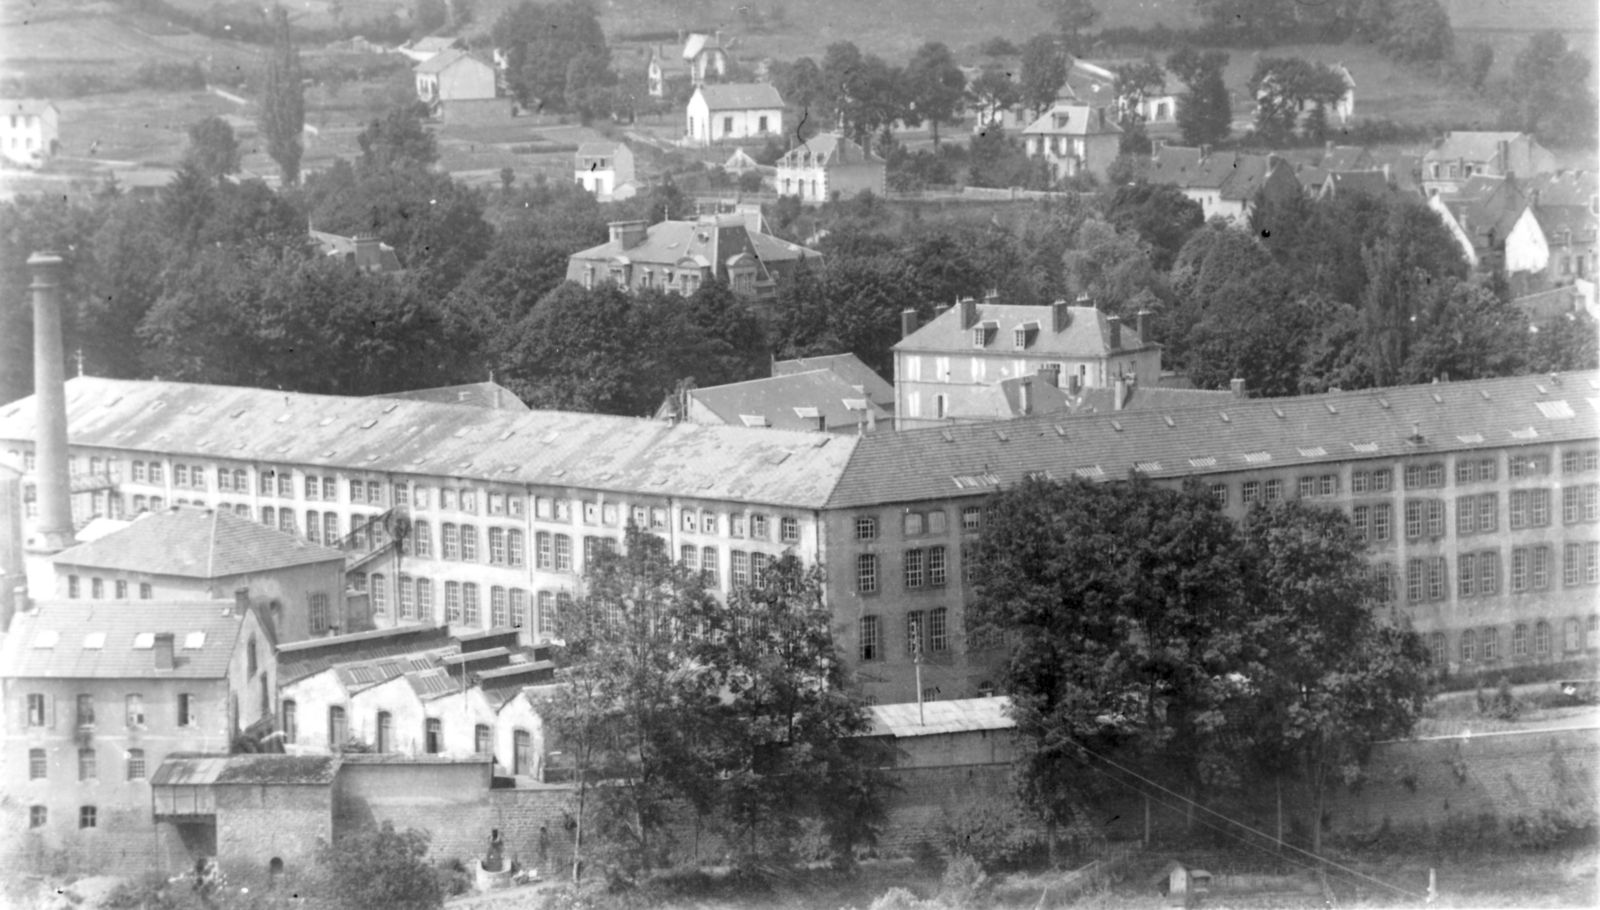 Carte postale des usines Sallandrouze avec le bâtiment de la machine à vapeur, au premier plan à gauche (collection particulière)